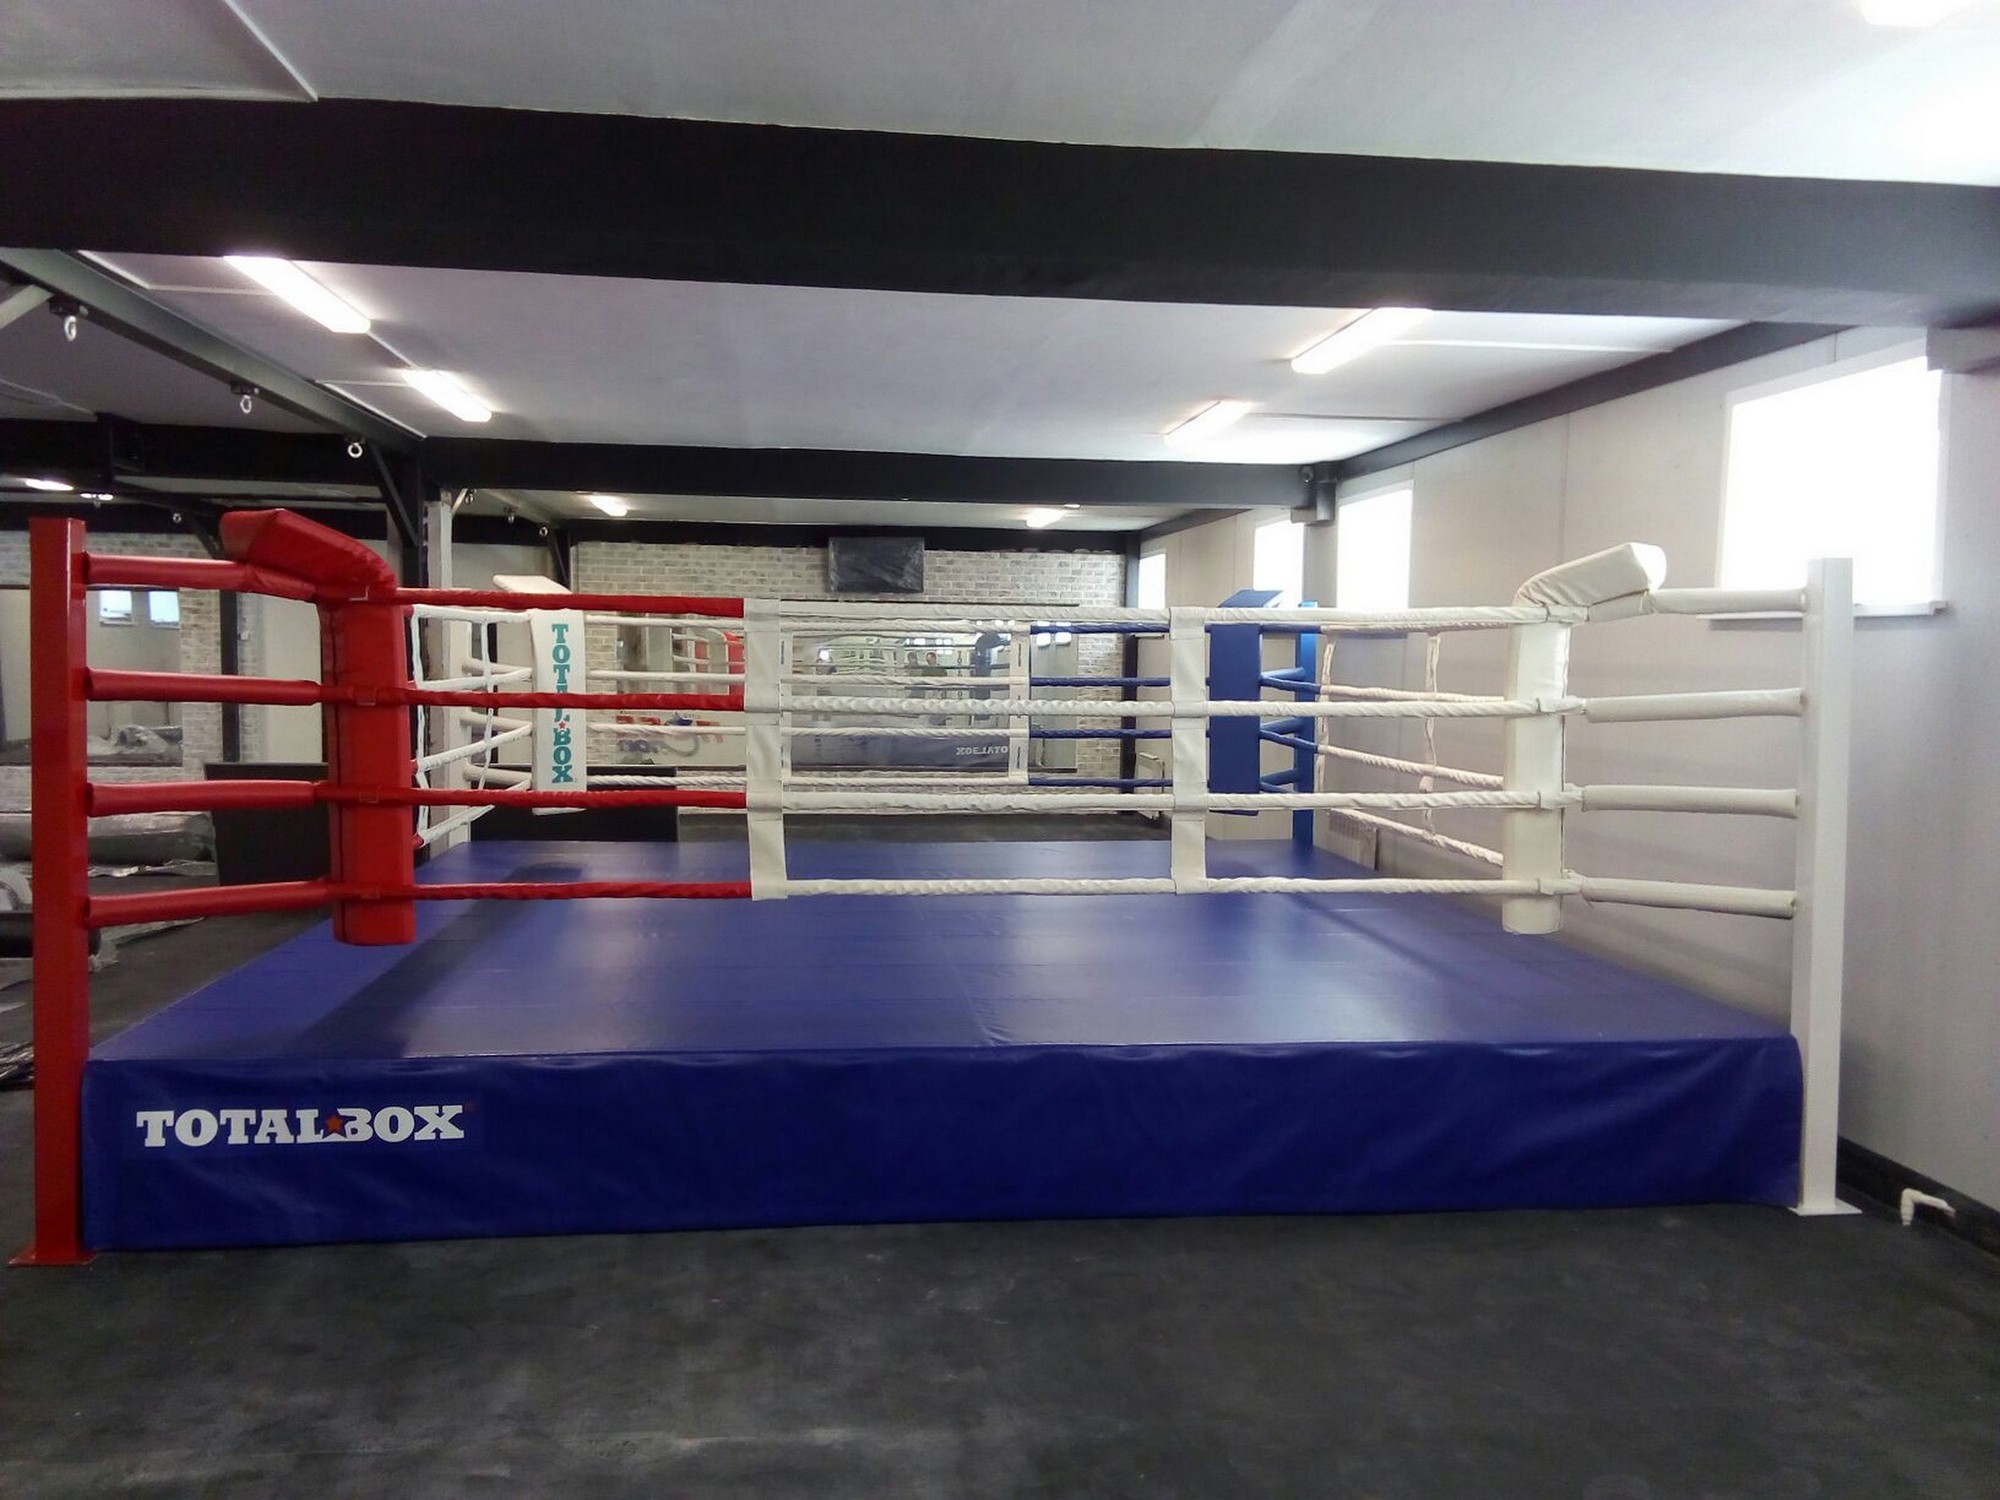 Боксерский ринг на помосте 0,5 м Totalbox размер по канатам 5×5 м РП 5-05 2000_1500